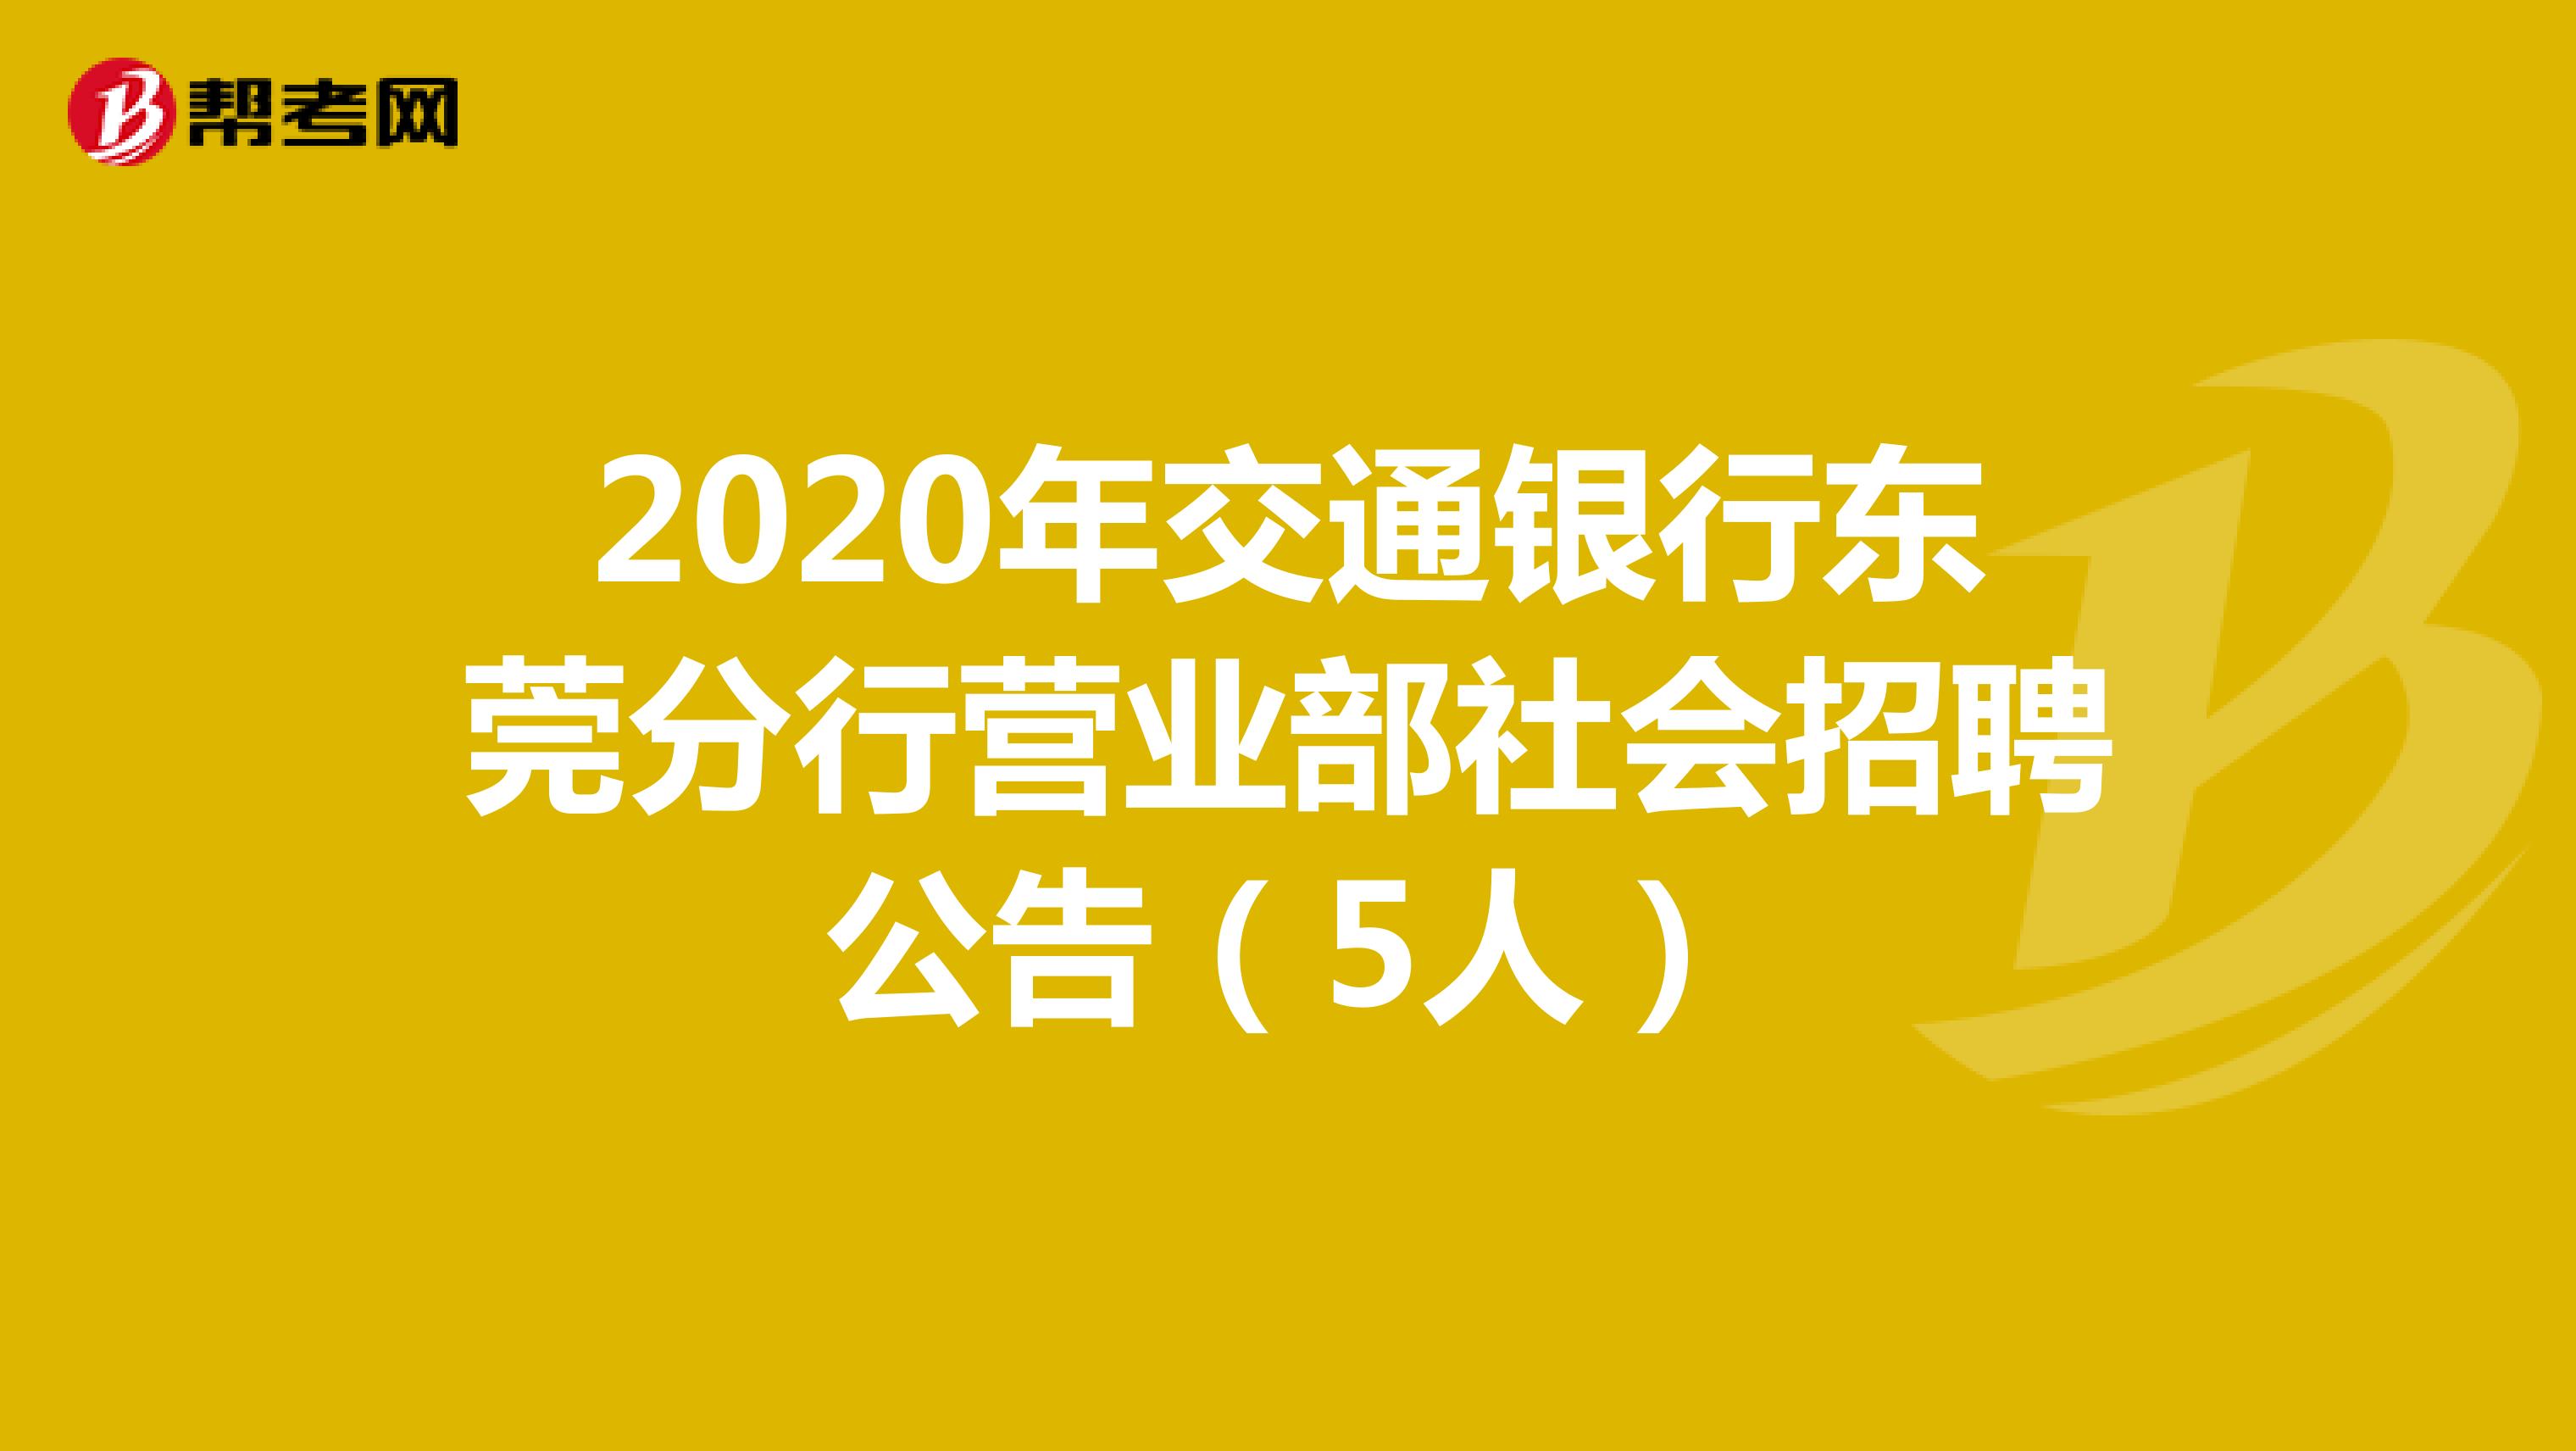 2020年交通银行东莞分行营业部社会招聘公告（5人）